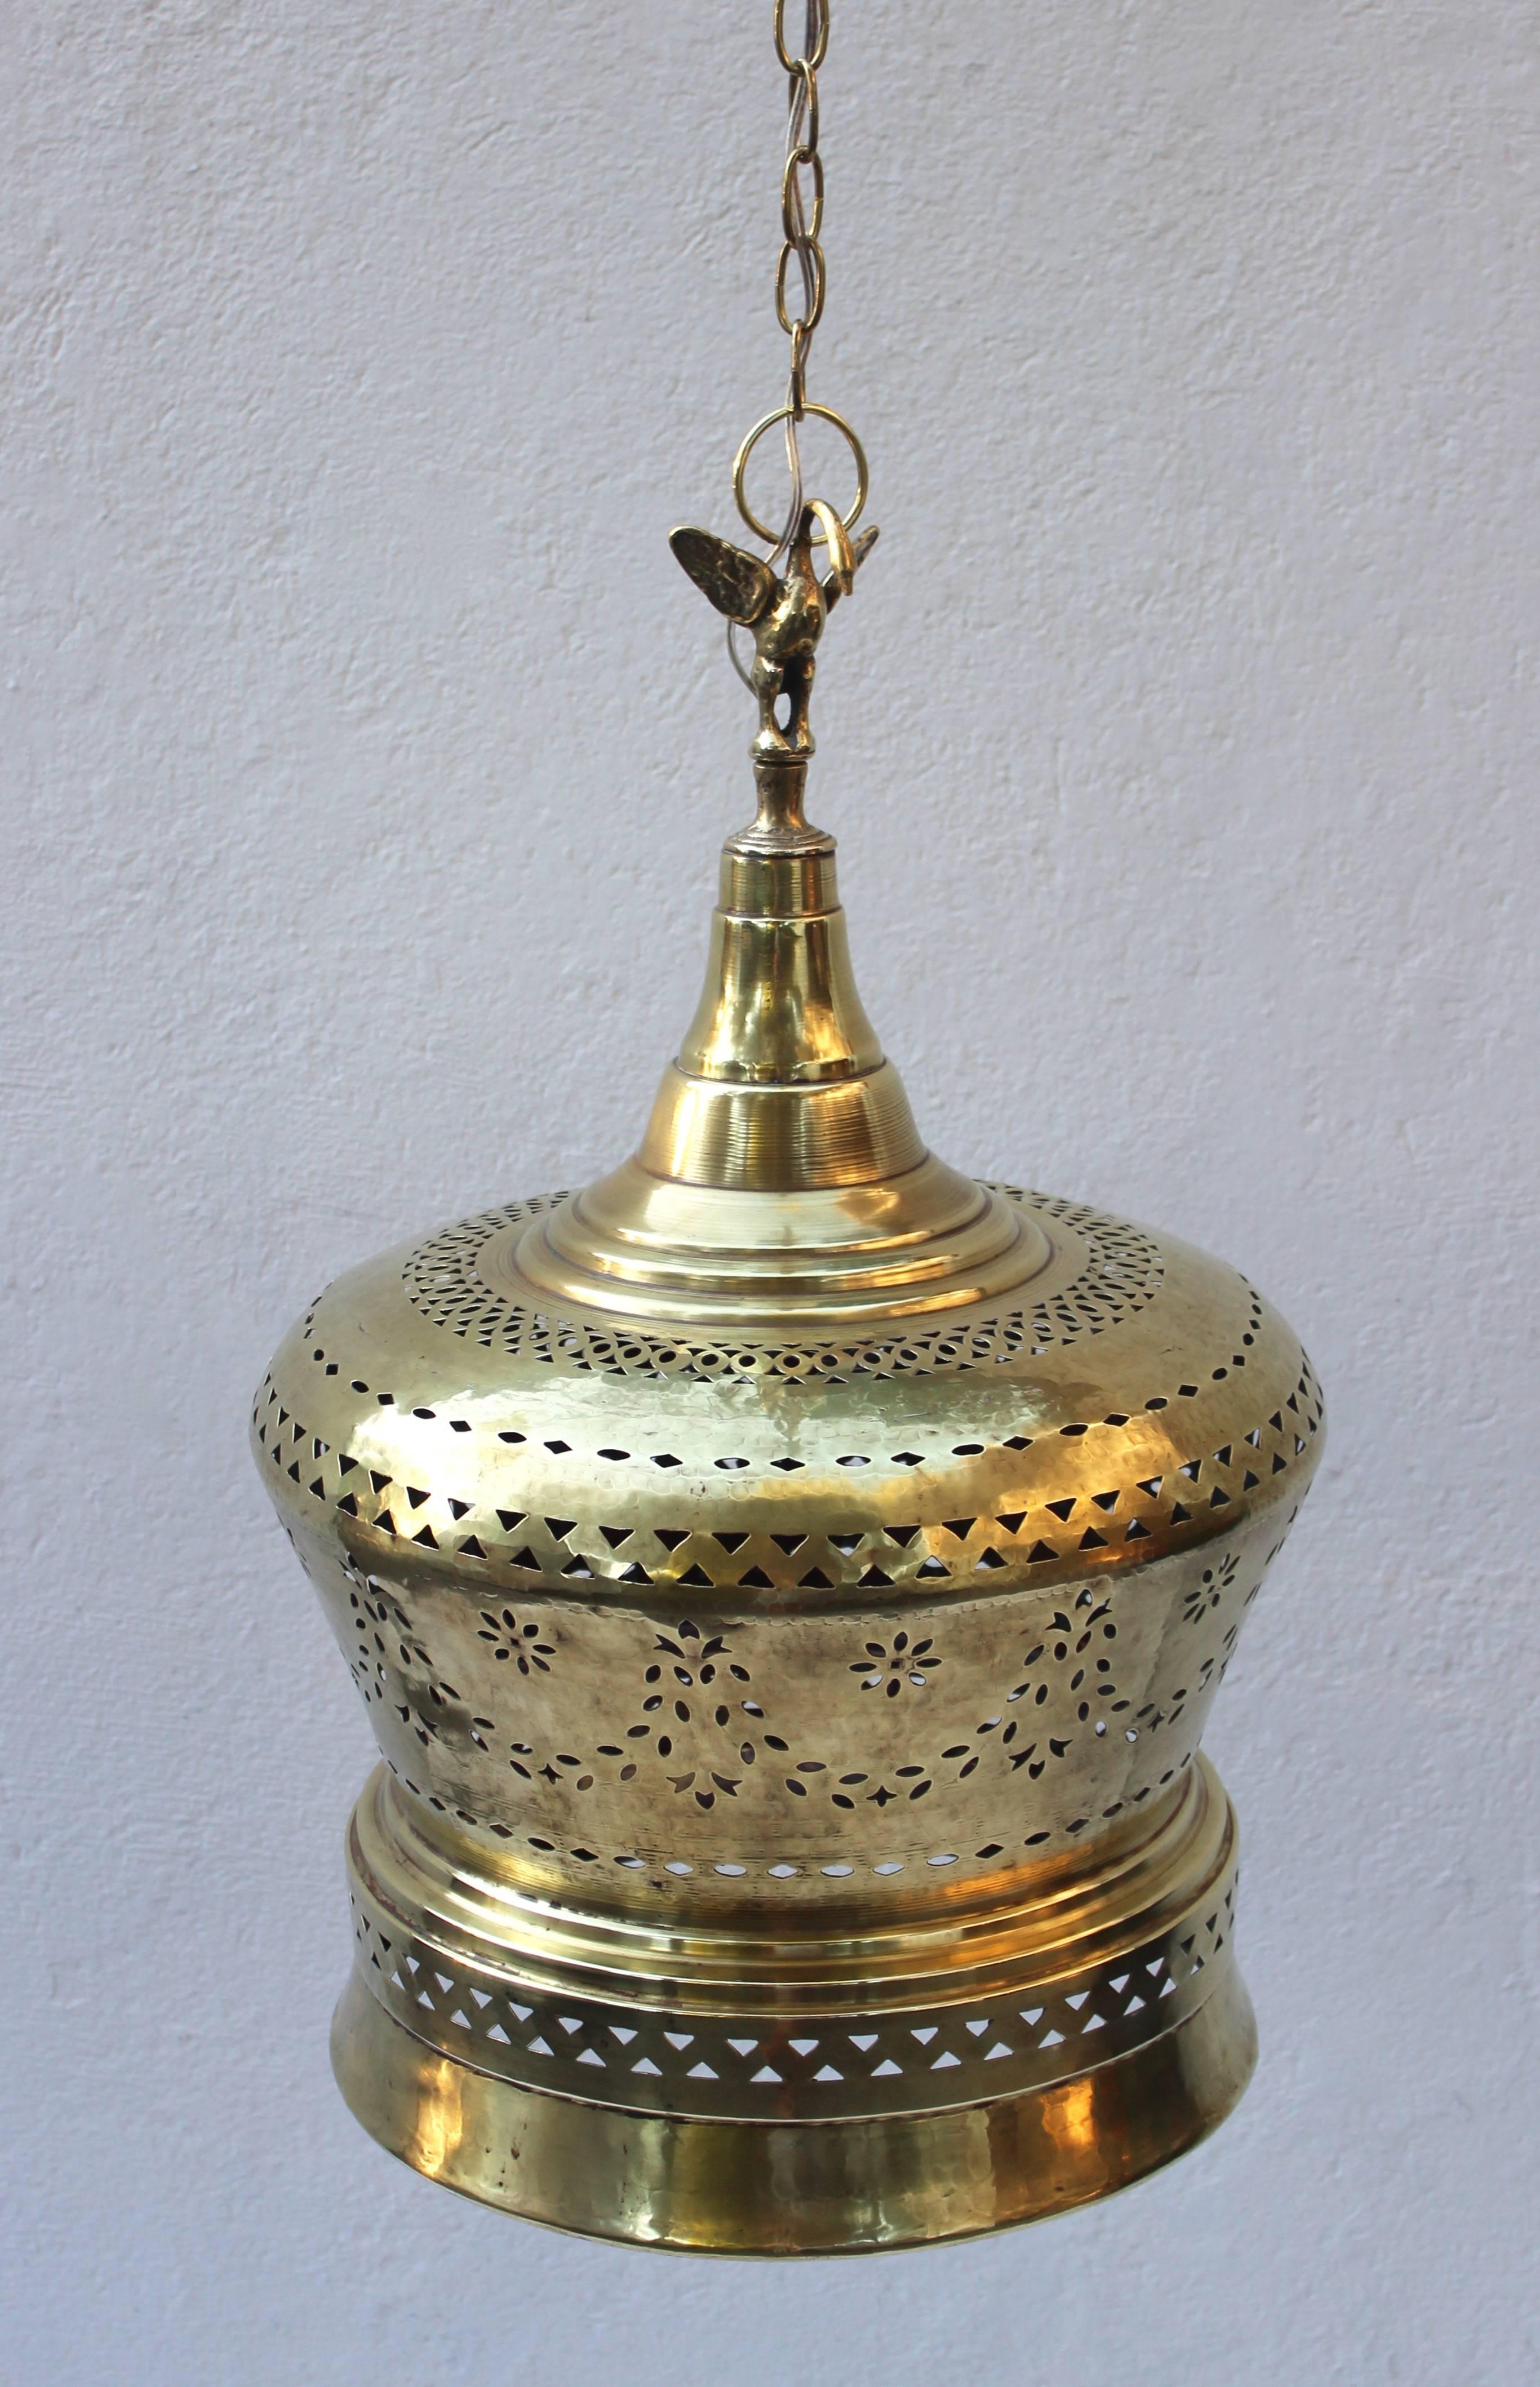 Gorgeous brass Moroccan light fixture.